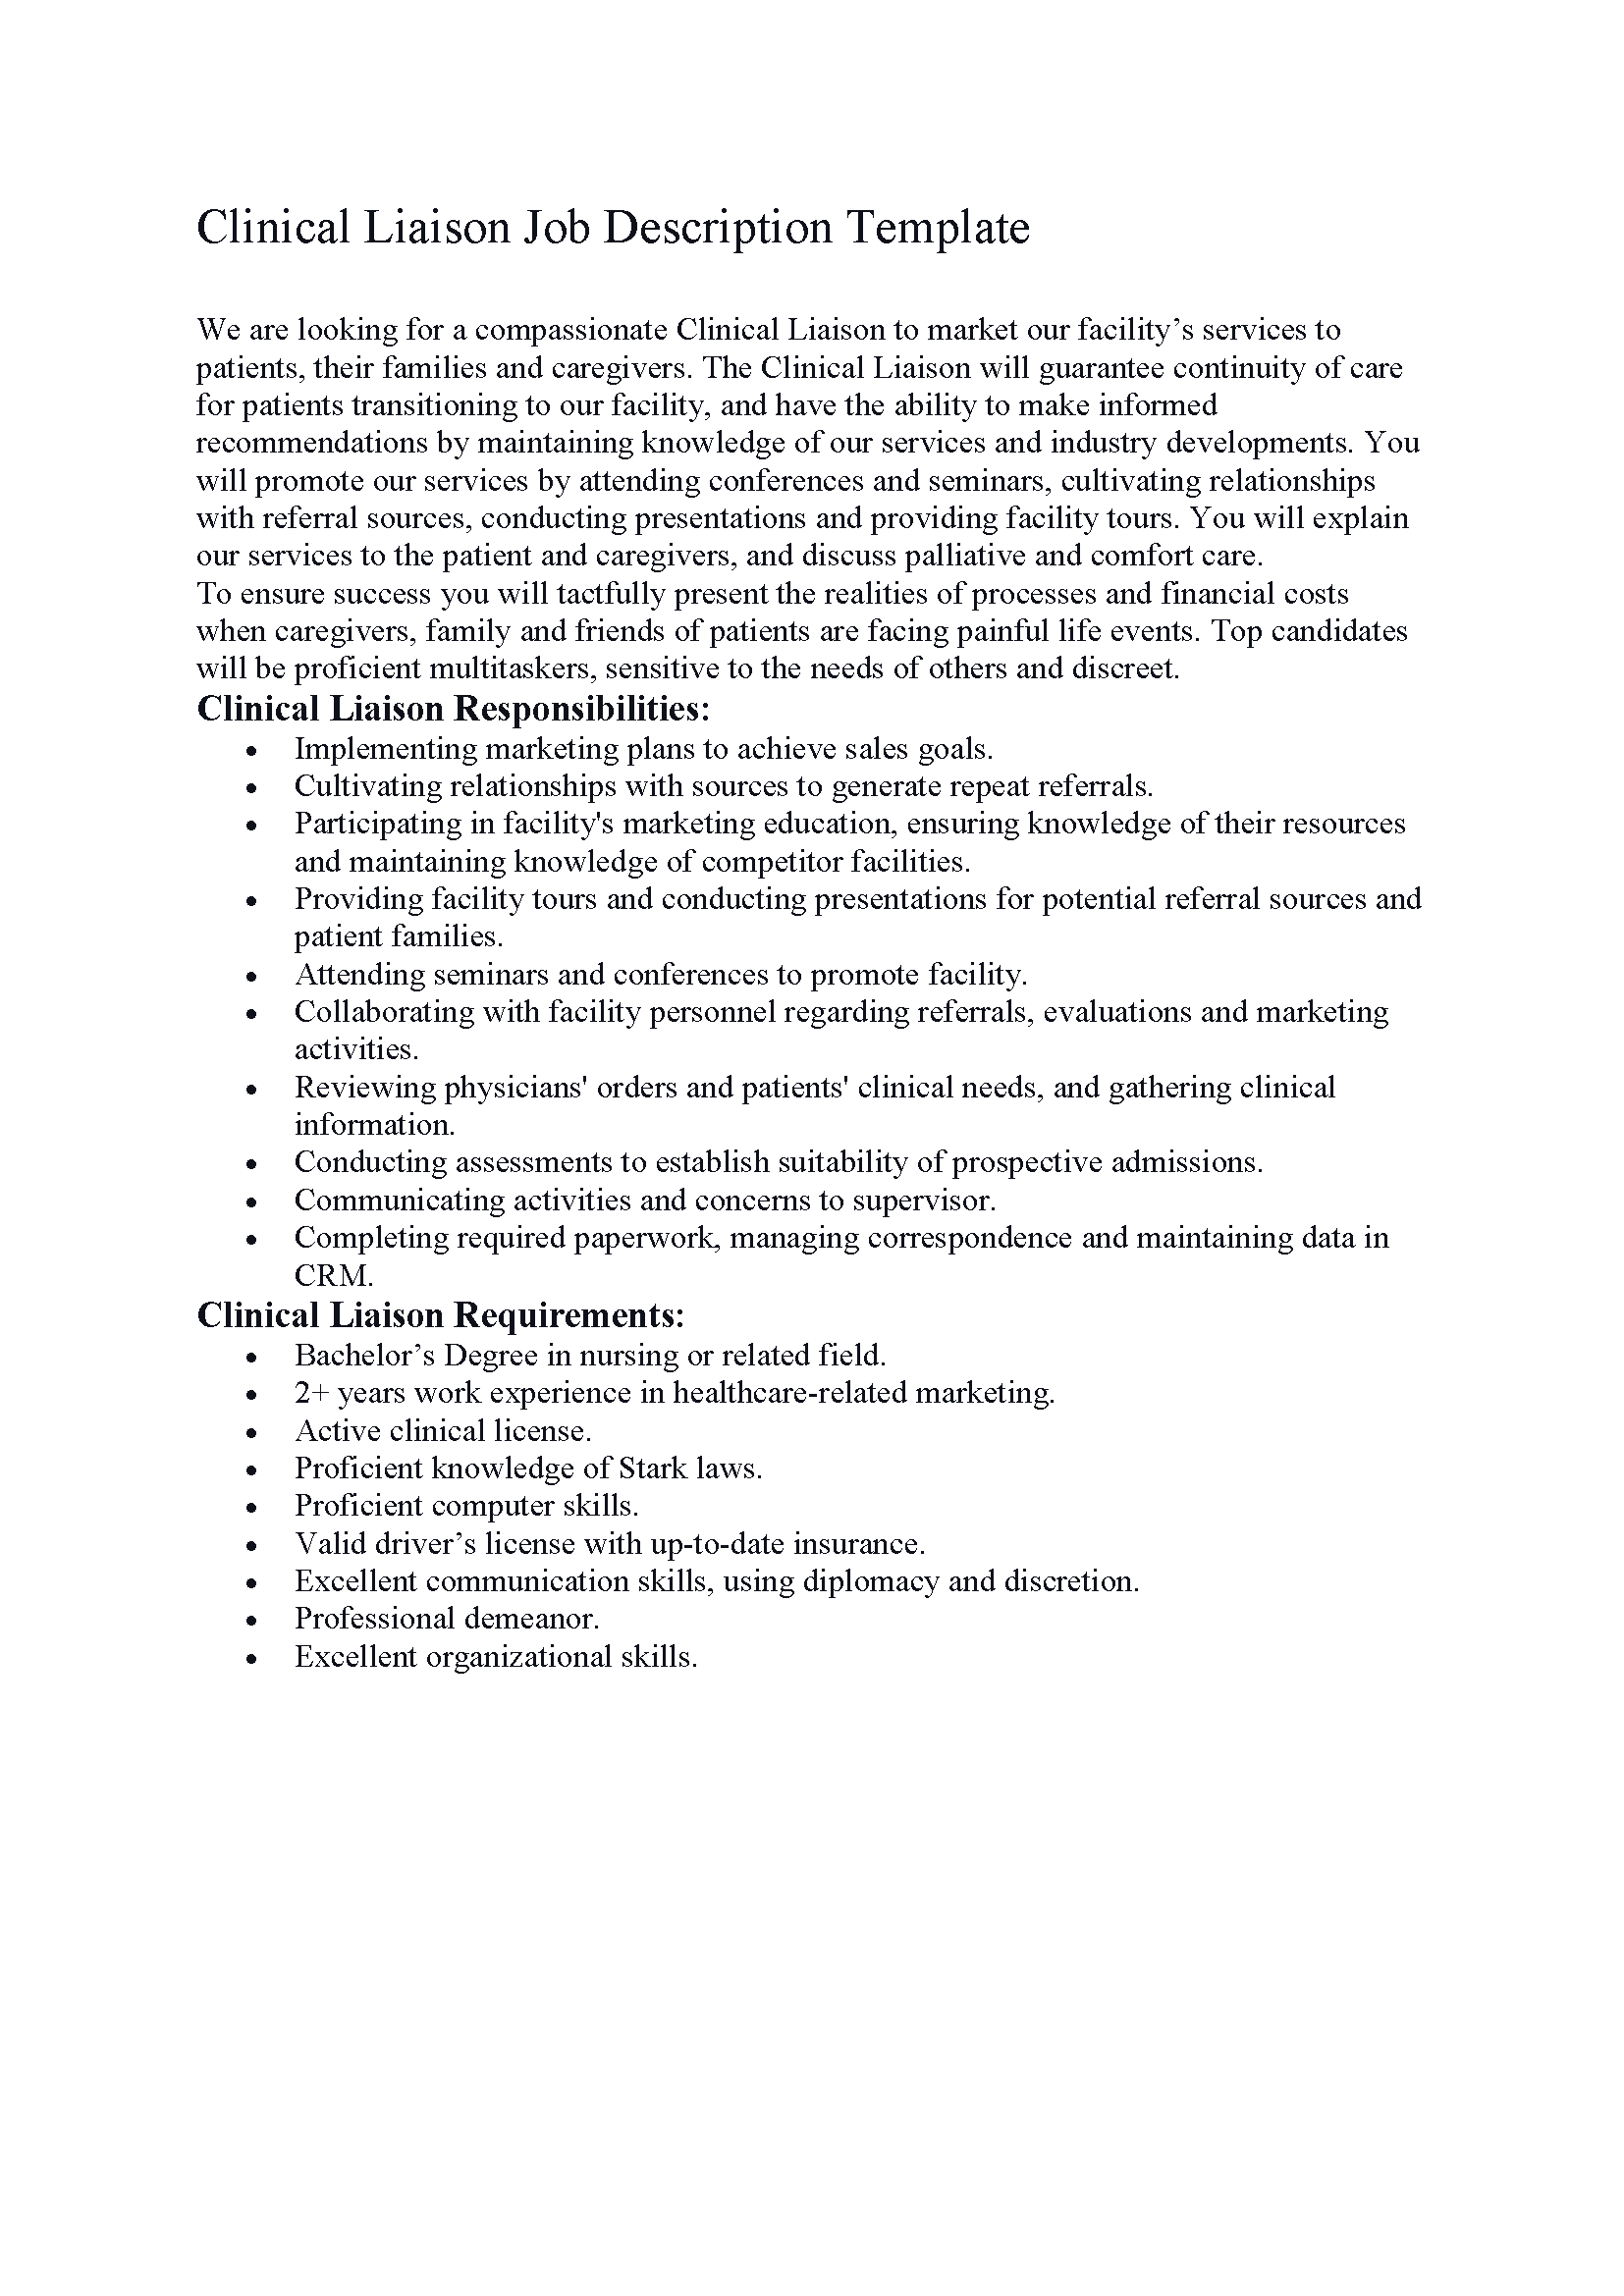 Clinical Liaison Job Description Template